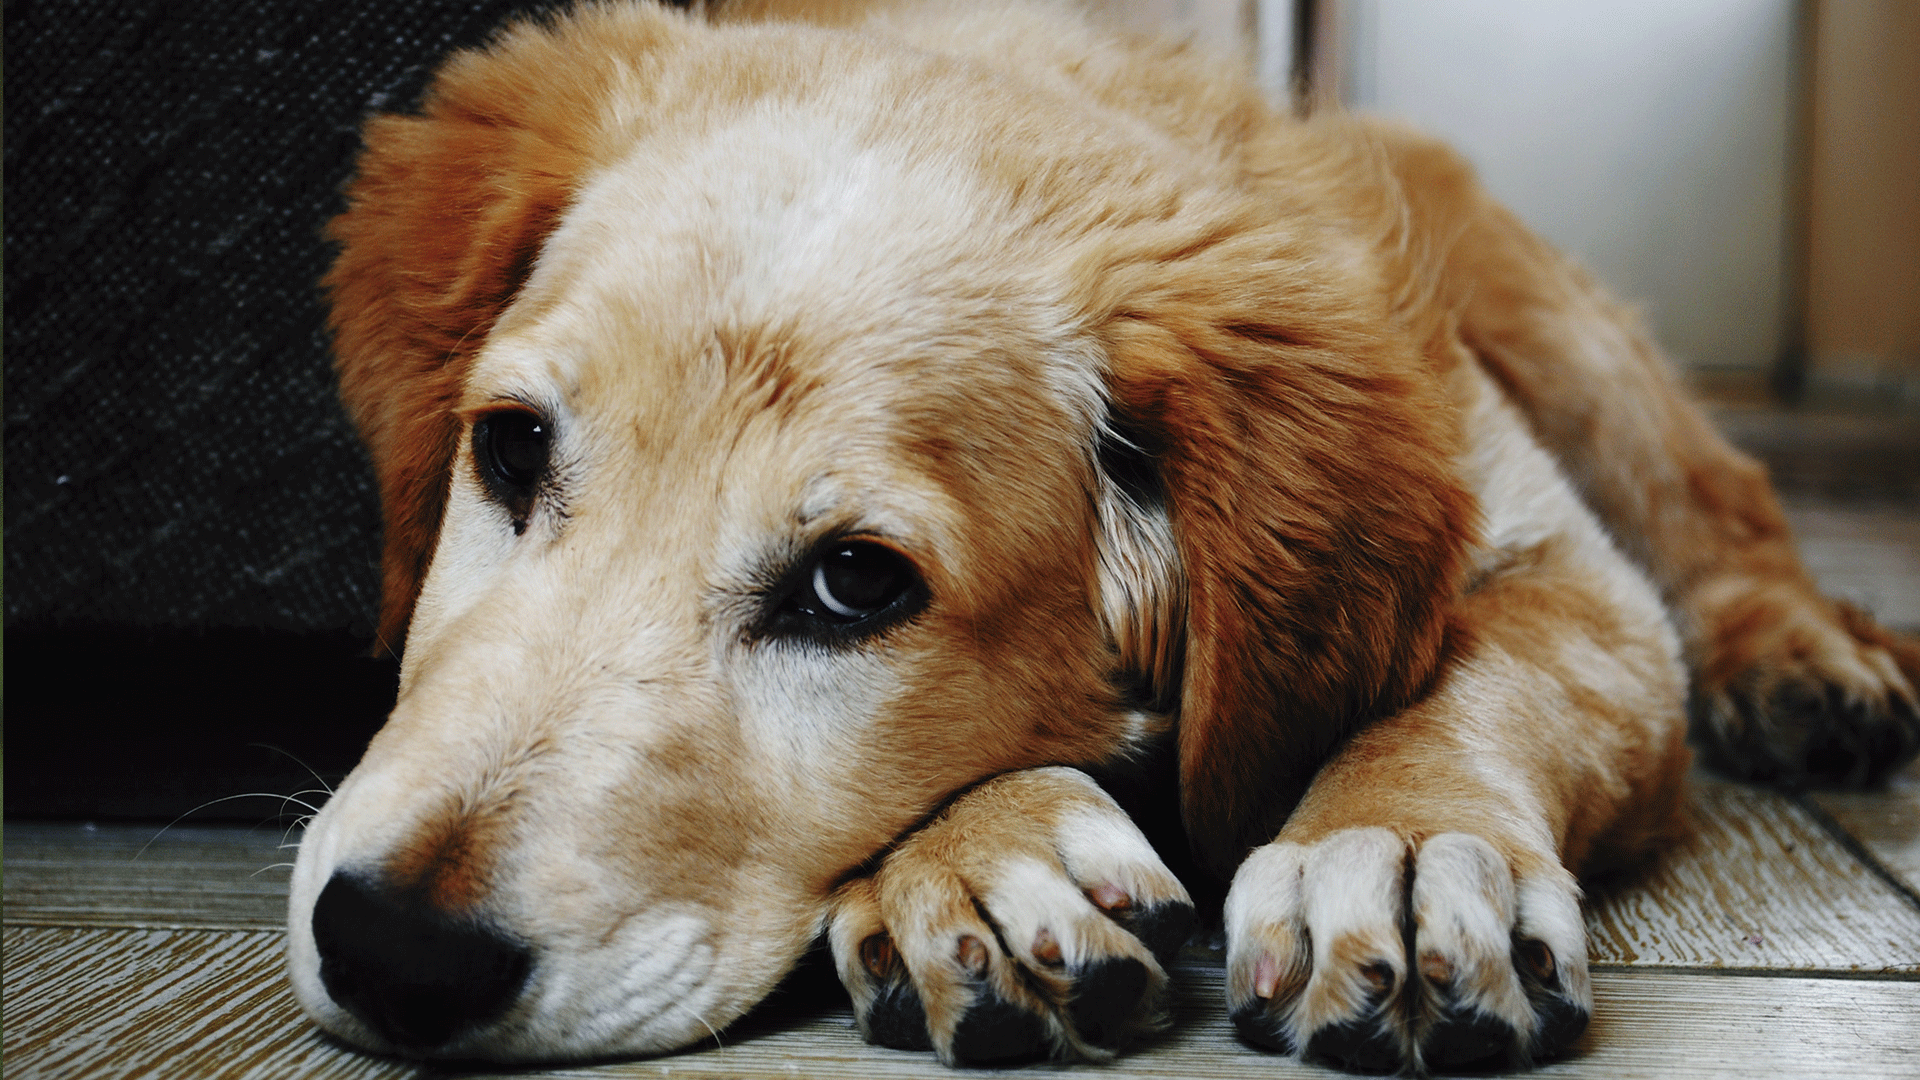 Saiba quais são as principais causas de morte súbita em cães